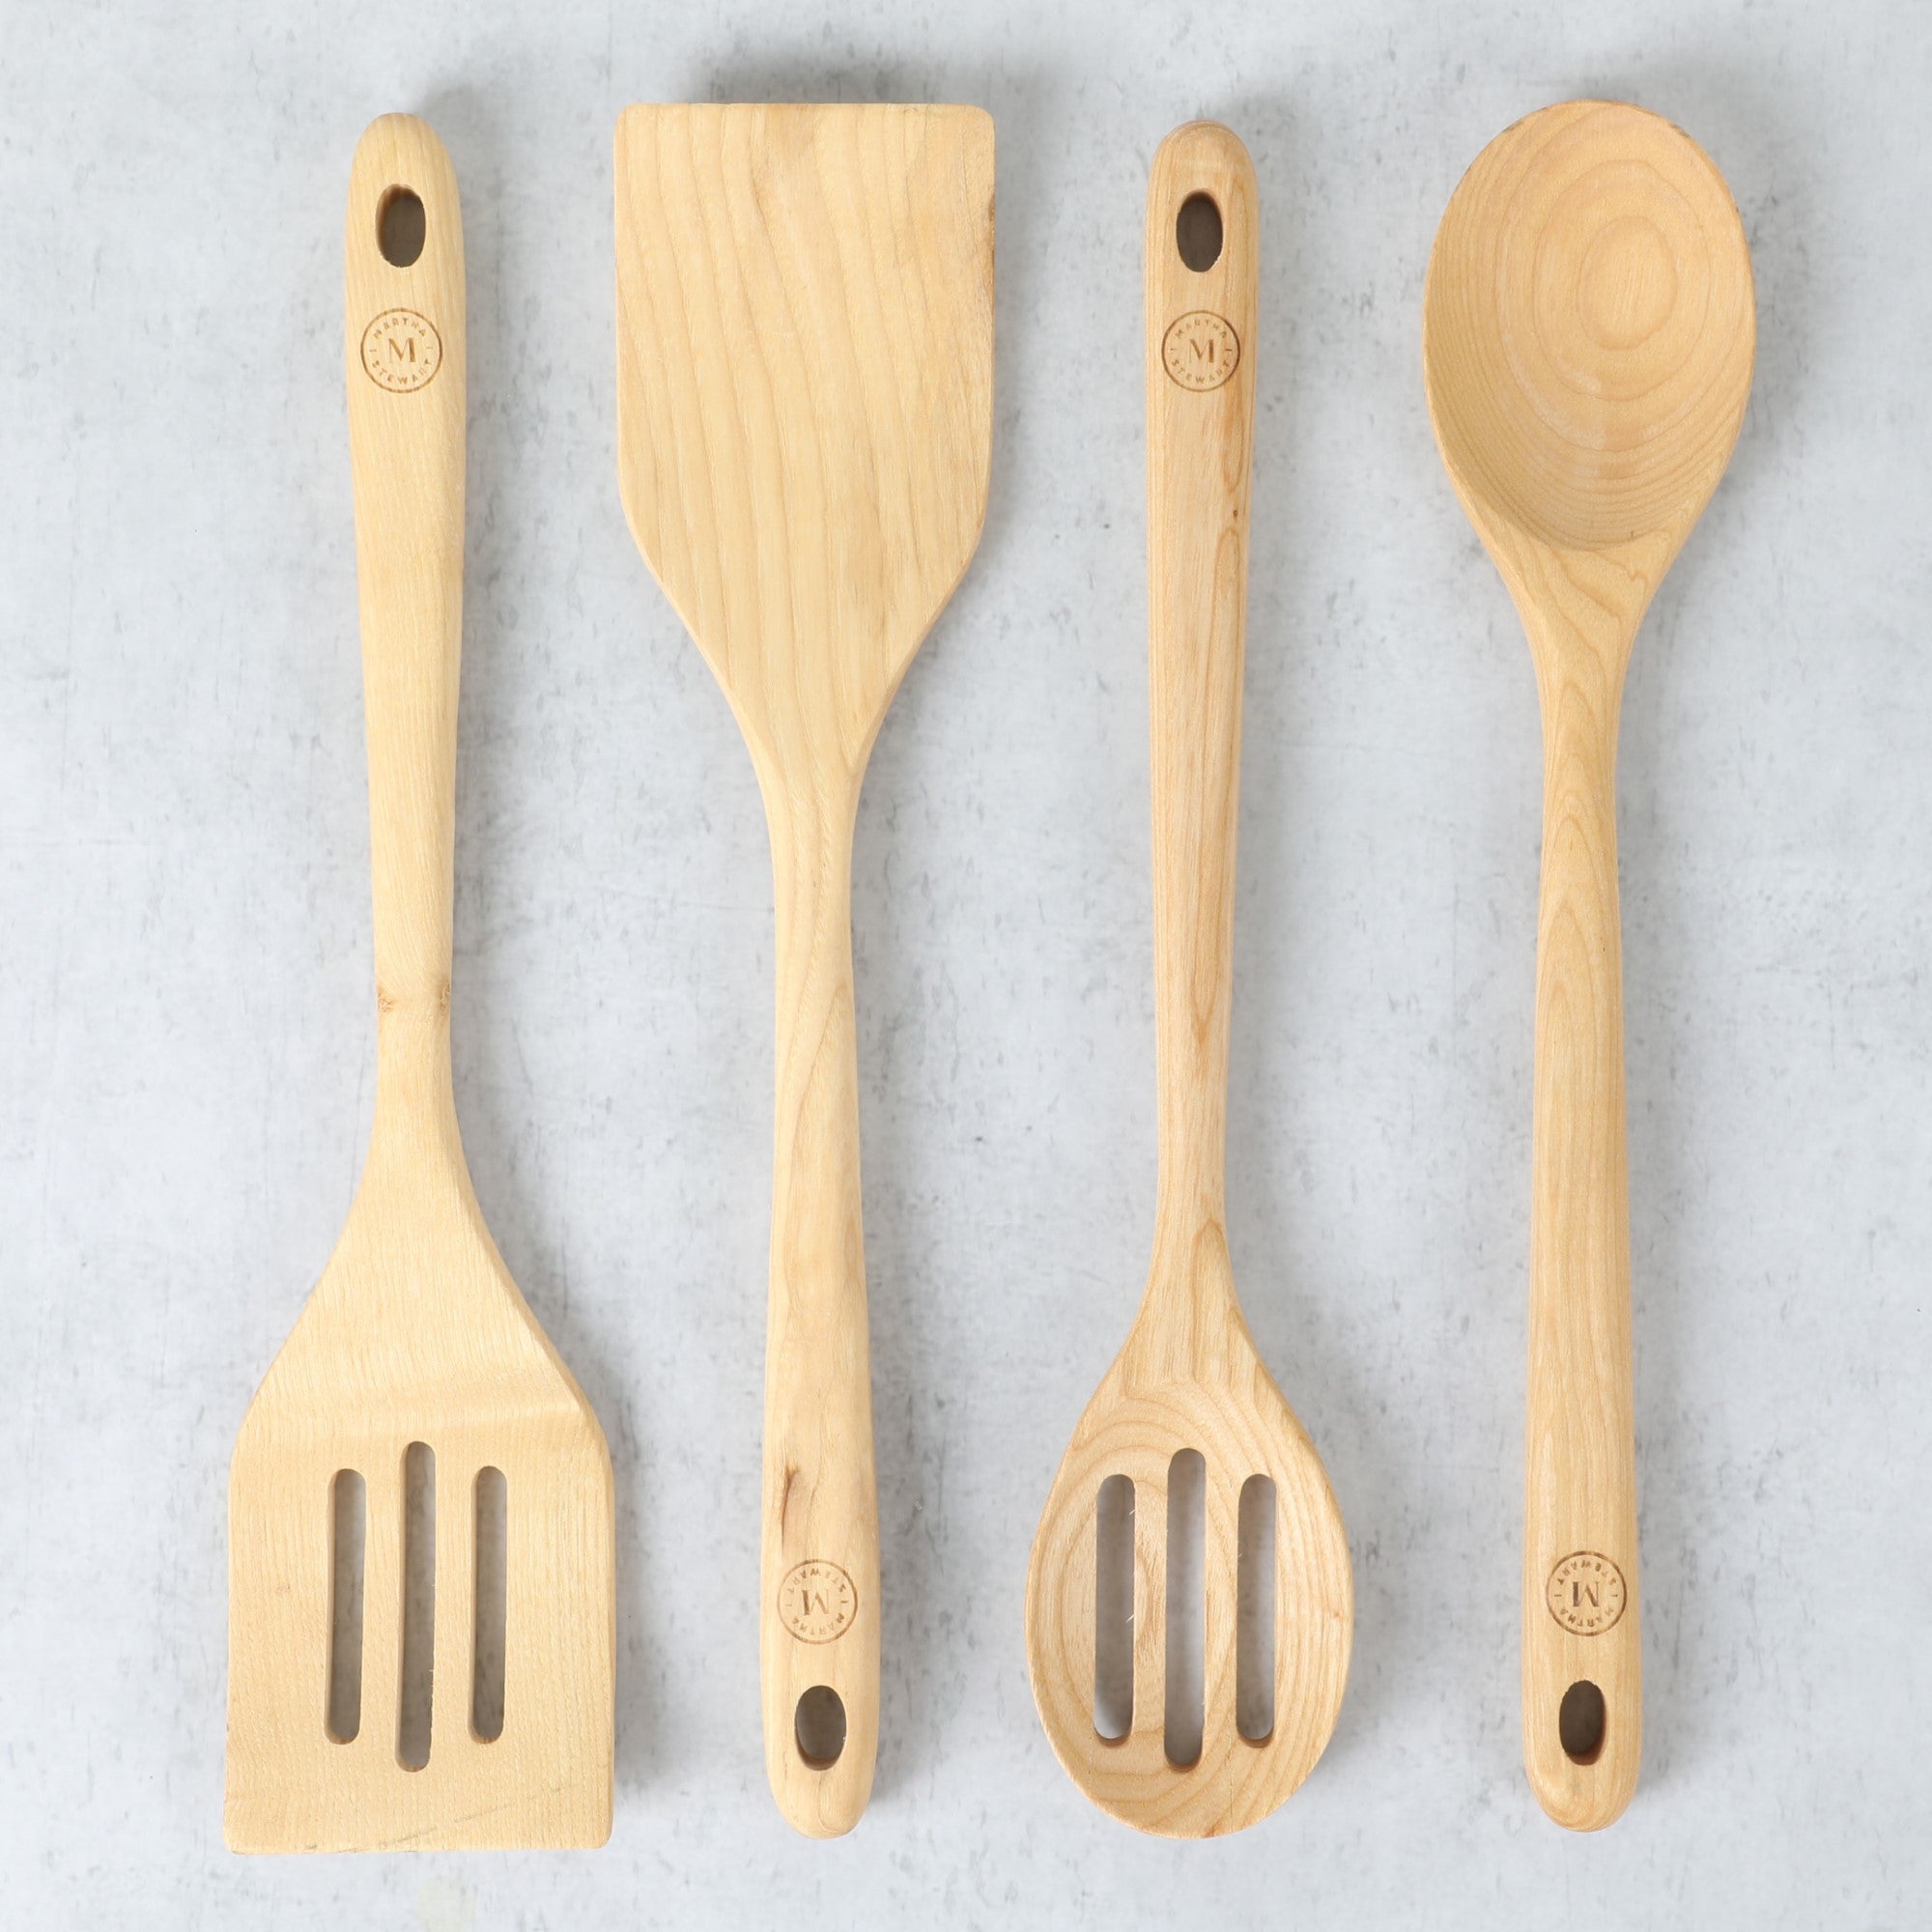 Martha Stewart 9-Piece Wood Kitchen Gadget and Tool Set